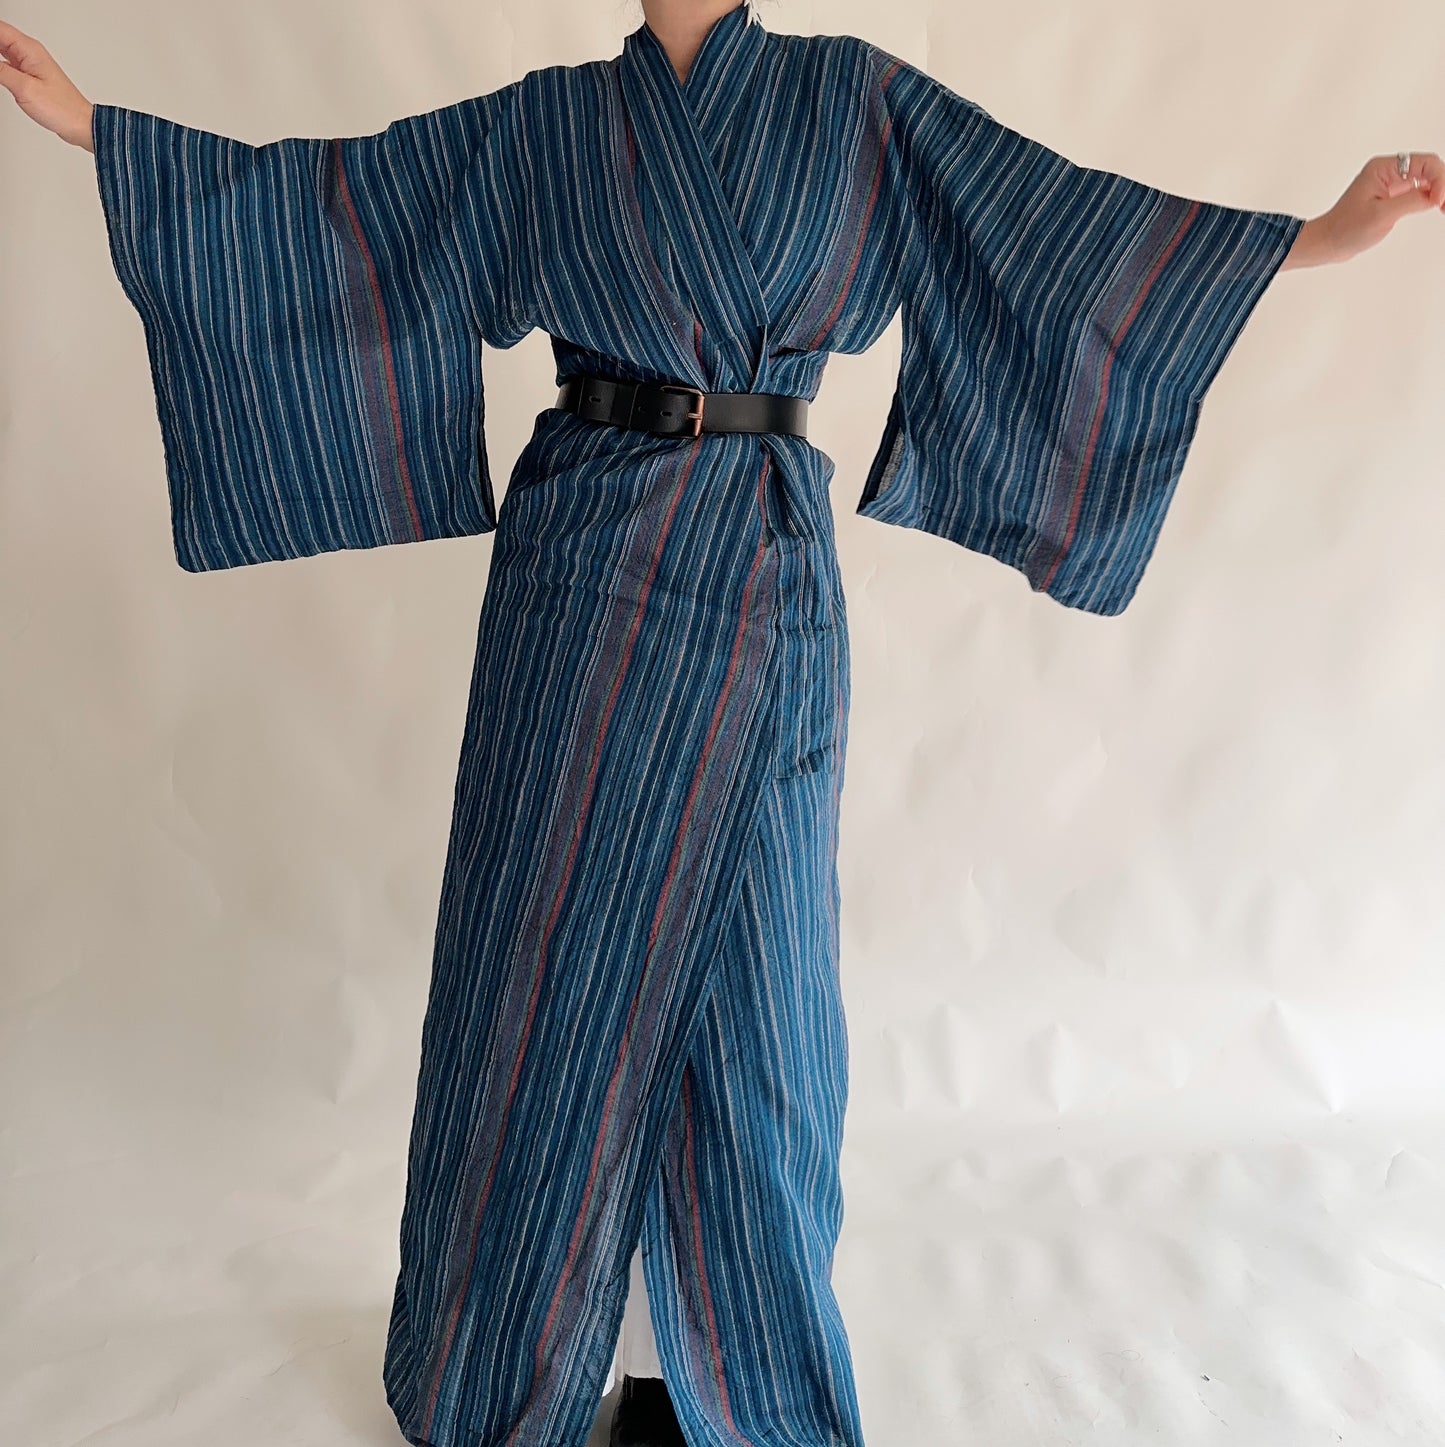 Kimono Vintage